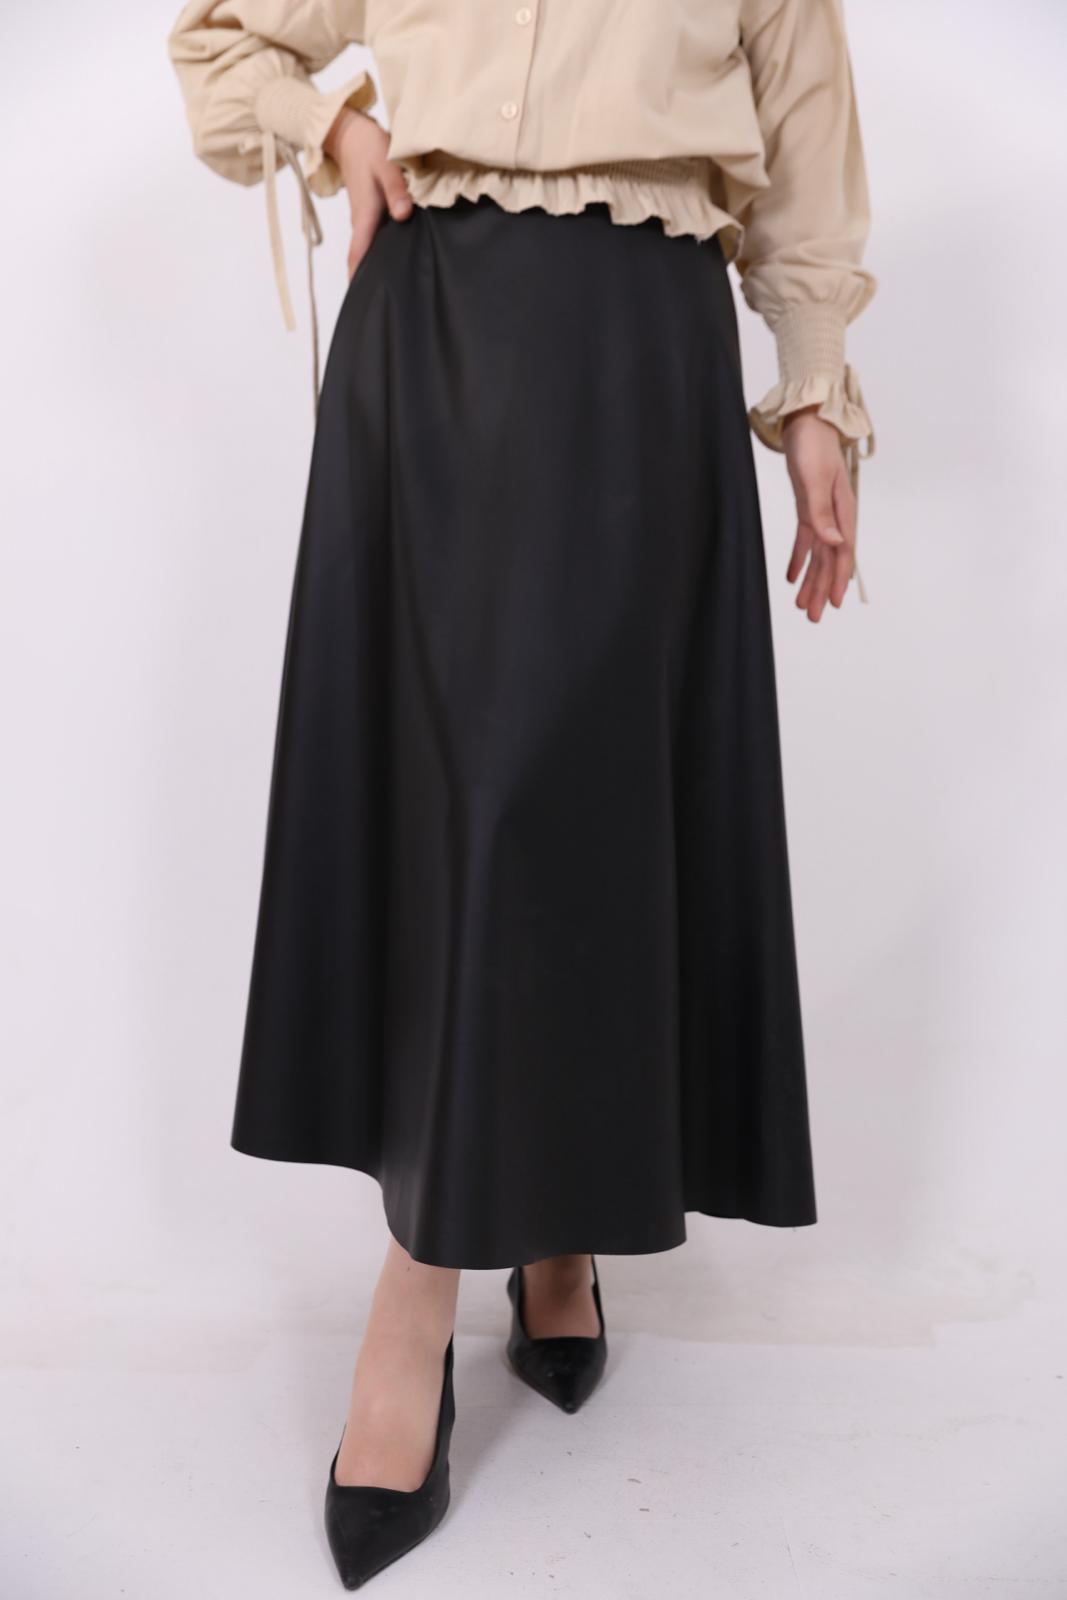 Kiloş Leather Skirt Black